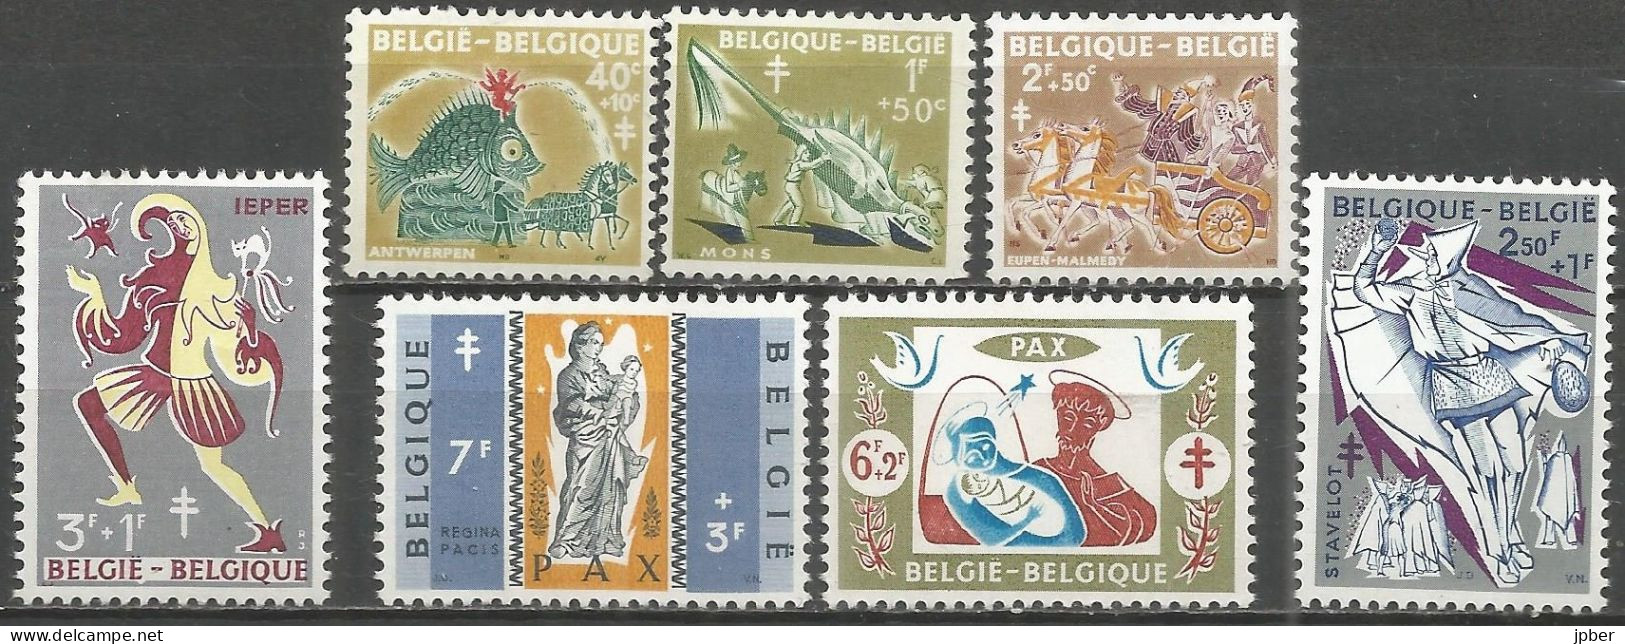 Belgique - Folklore - Anvers, Mons, Eupen, Stavelot, Ypres - N°1114 à 1120 */** - Neufs